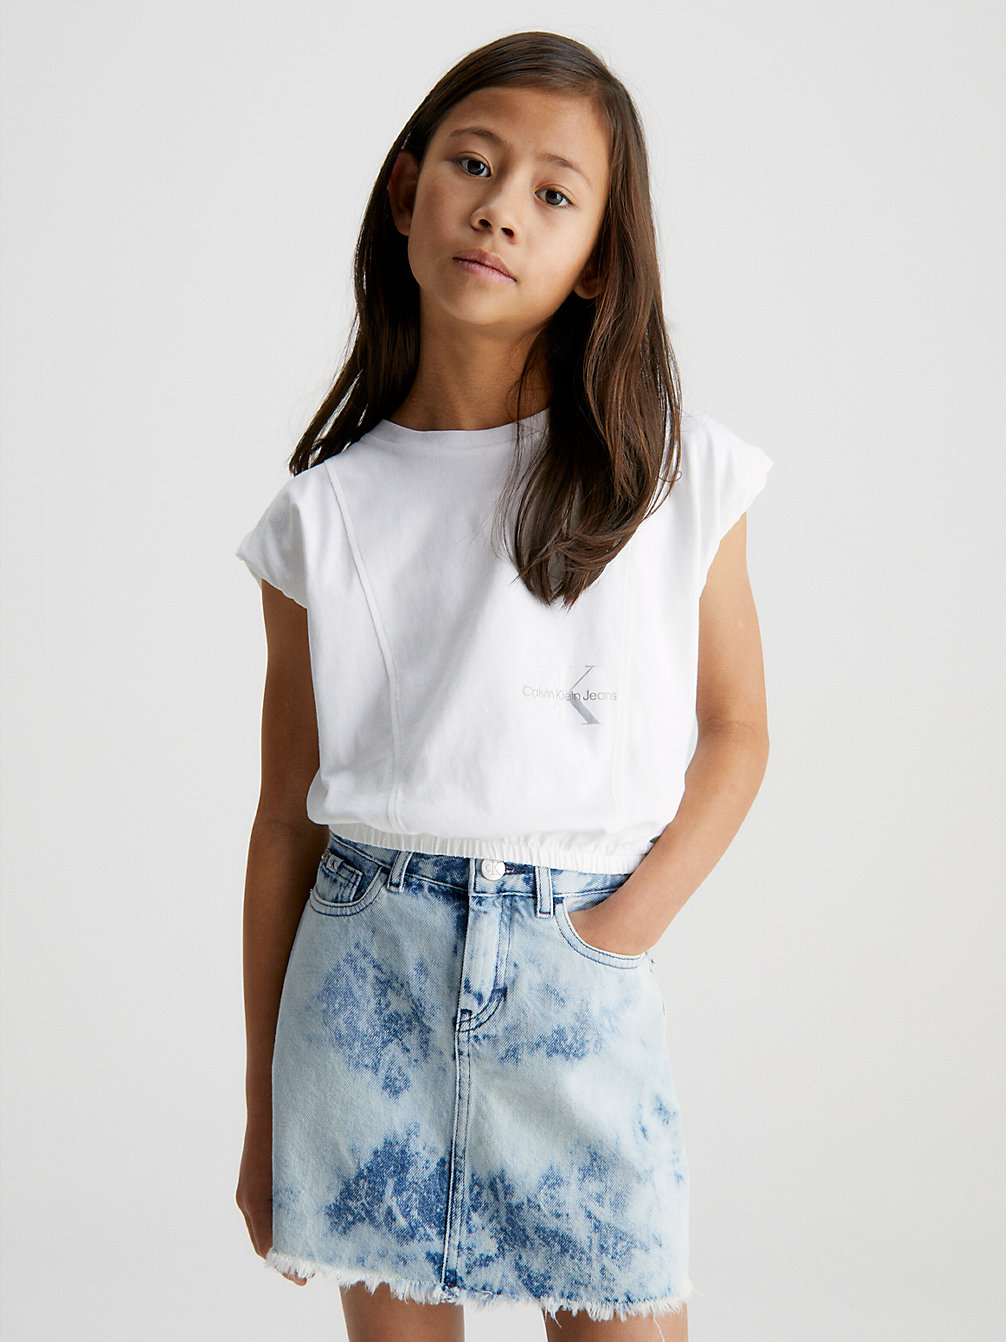 BRIGHT WHITE Cap Sleeve Logo T-Shirt undefined girls Calvin Klein